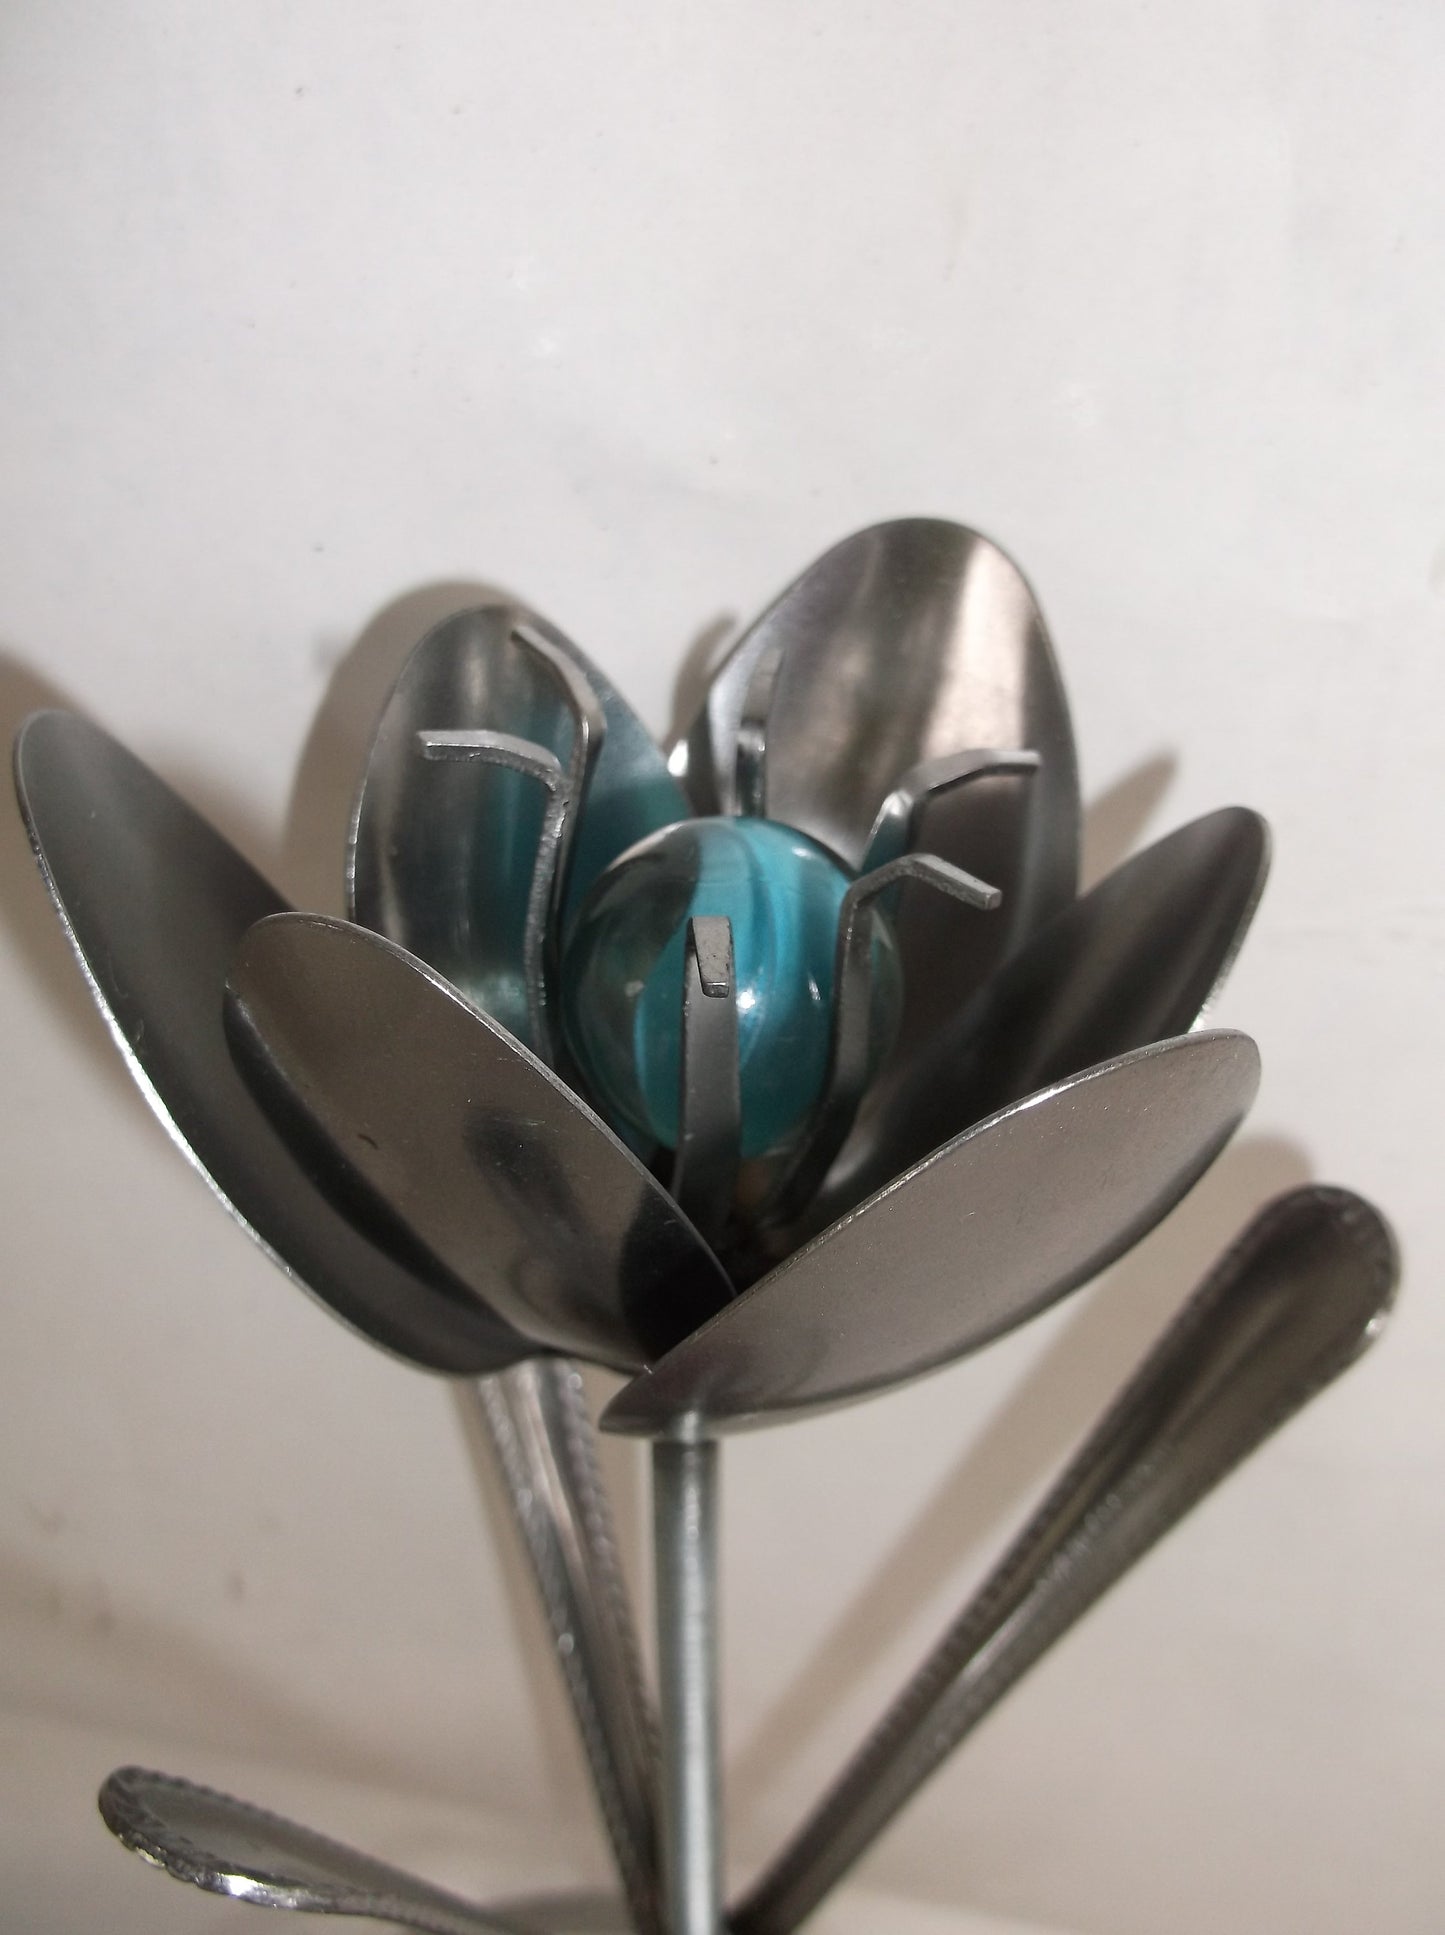 Green Tulip, Metal Art Tulip, Spoon Flower, Recycled Silverware Flower